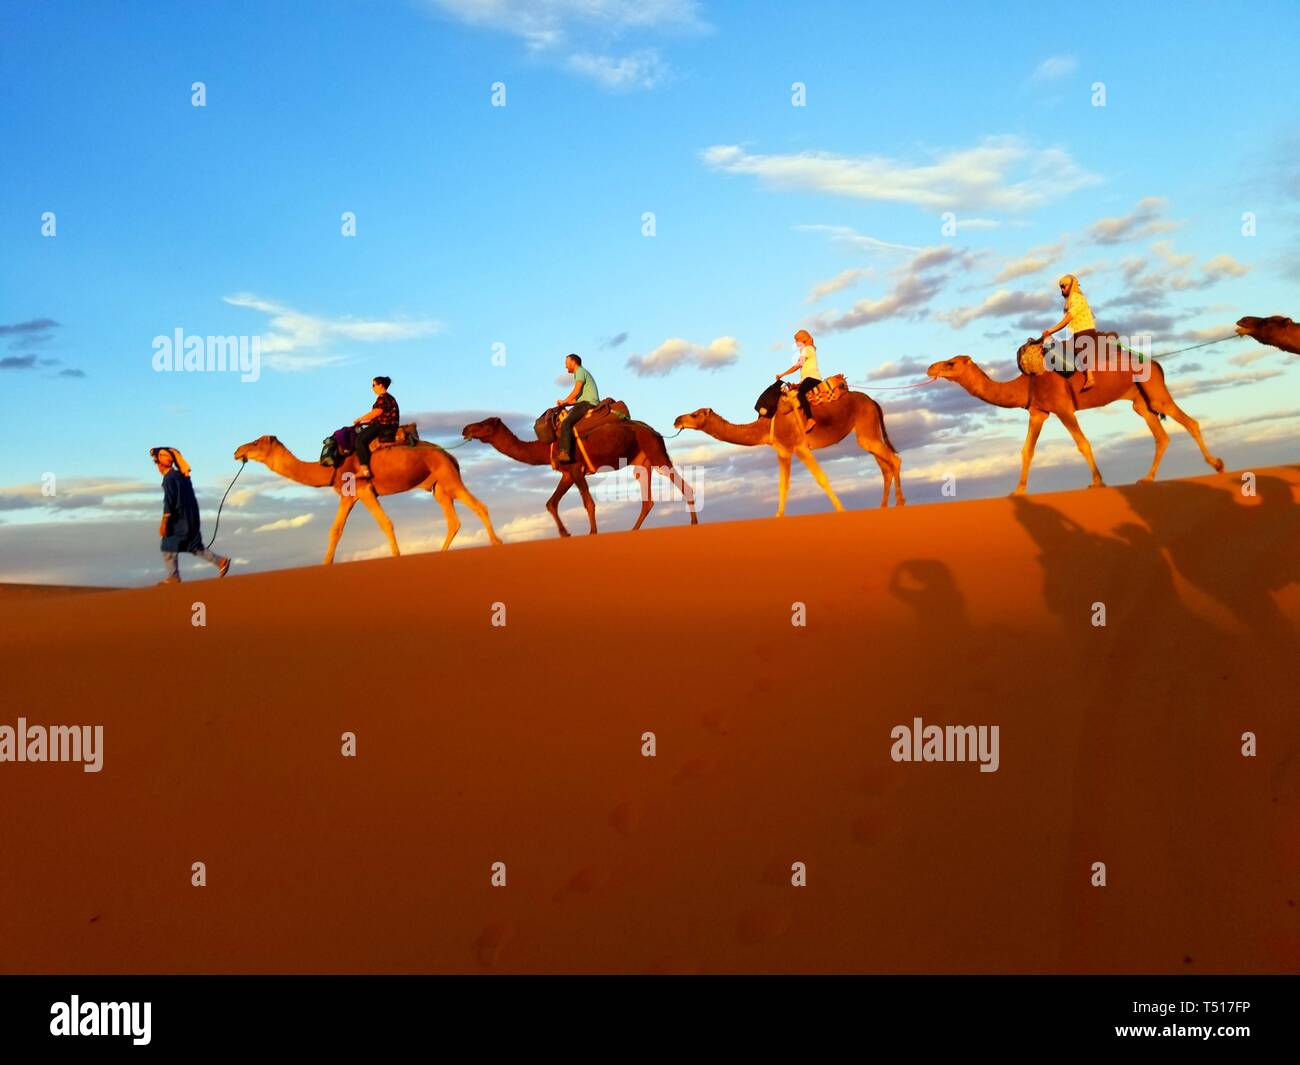 A dorso di cammello nel deserto del Sahara con il cammello leader guidato da un uomo a piedi e ogni cammello trasporta un ciclista, gruppo di turisti, cielo blu sullo sfondo. Foto Stock